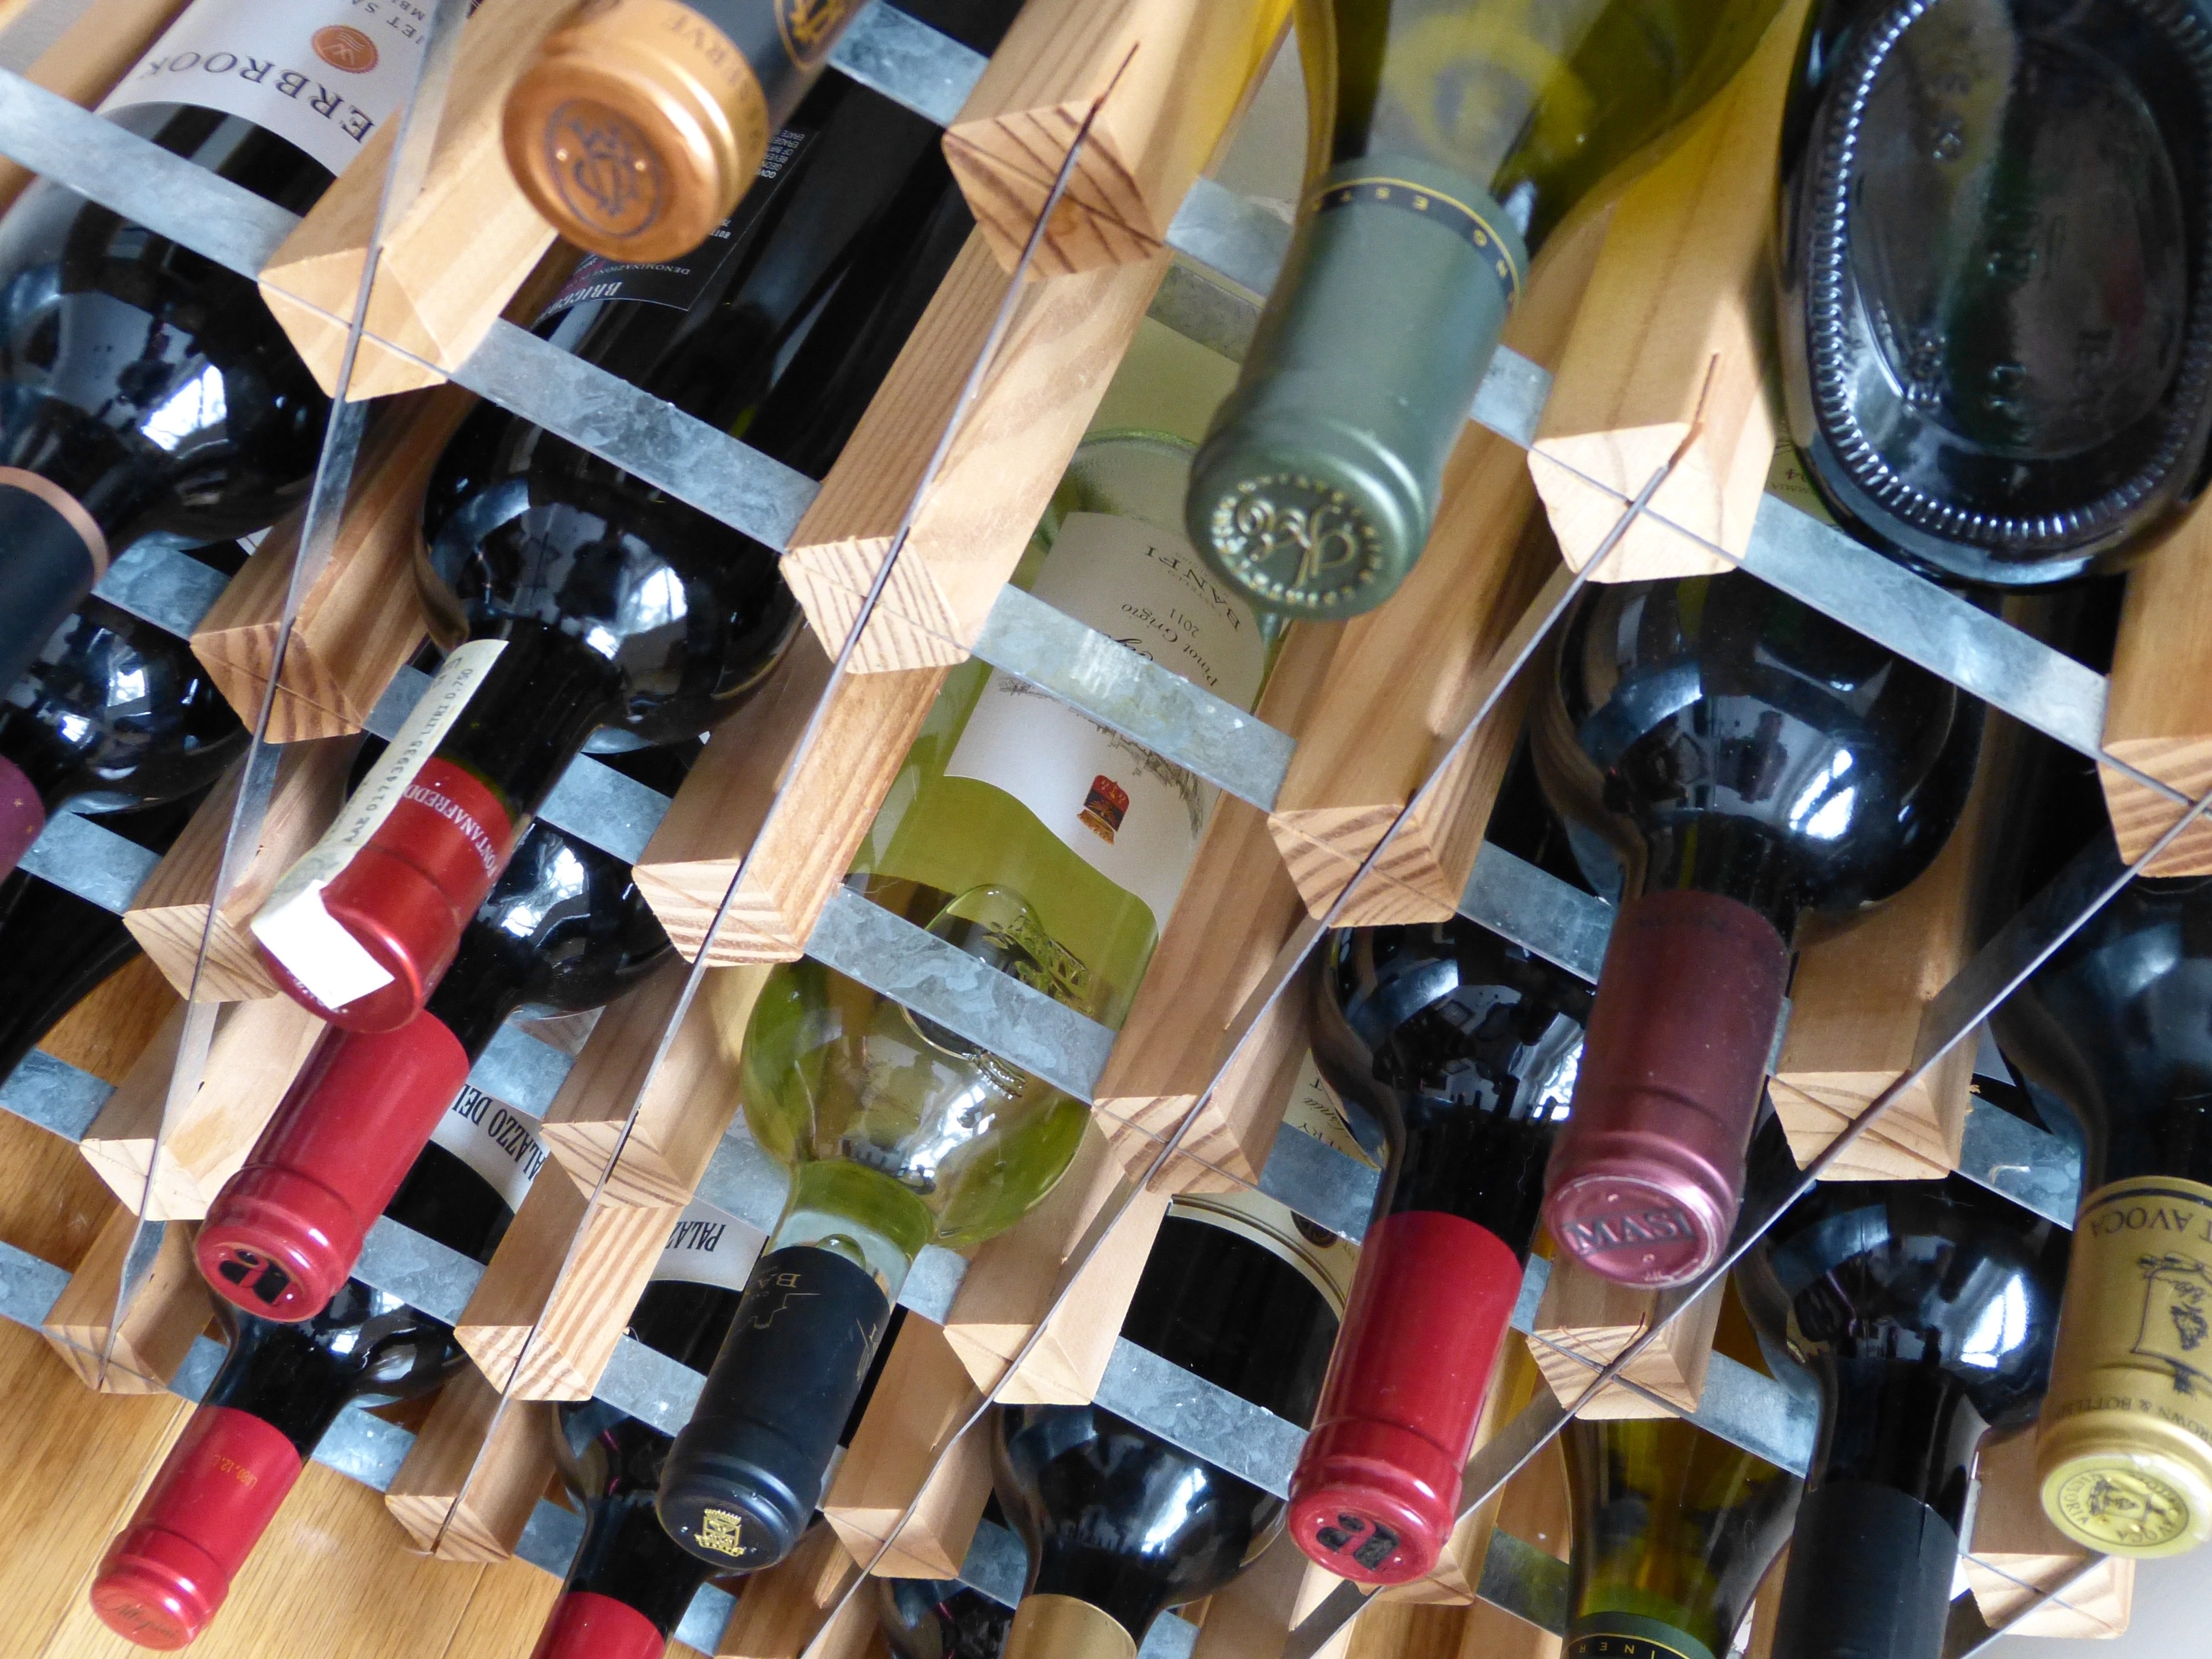 2560x1440 wallpaper | Glass, Bottle, White Wine, Bottles, Wine, bottle